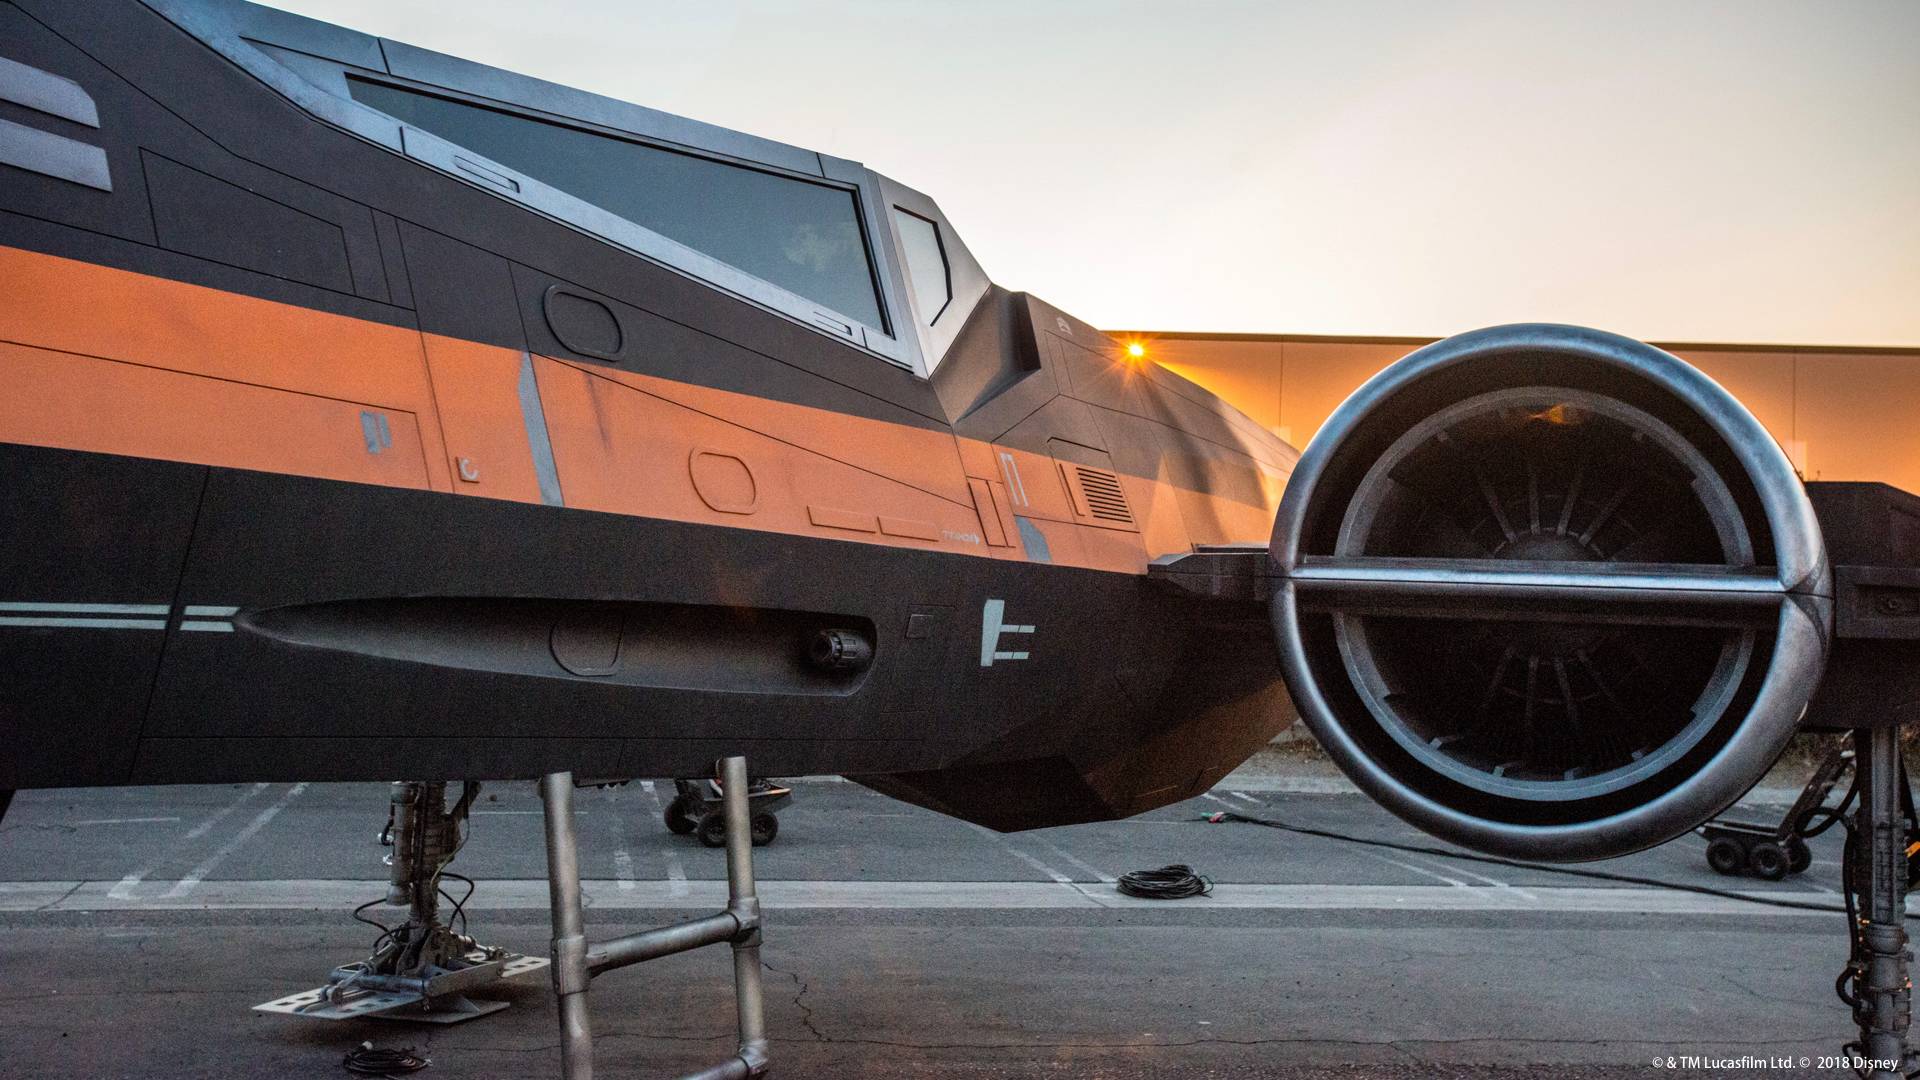 X-wing Starfighter Under Development for Star Wars Galaxy's Edge